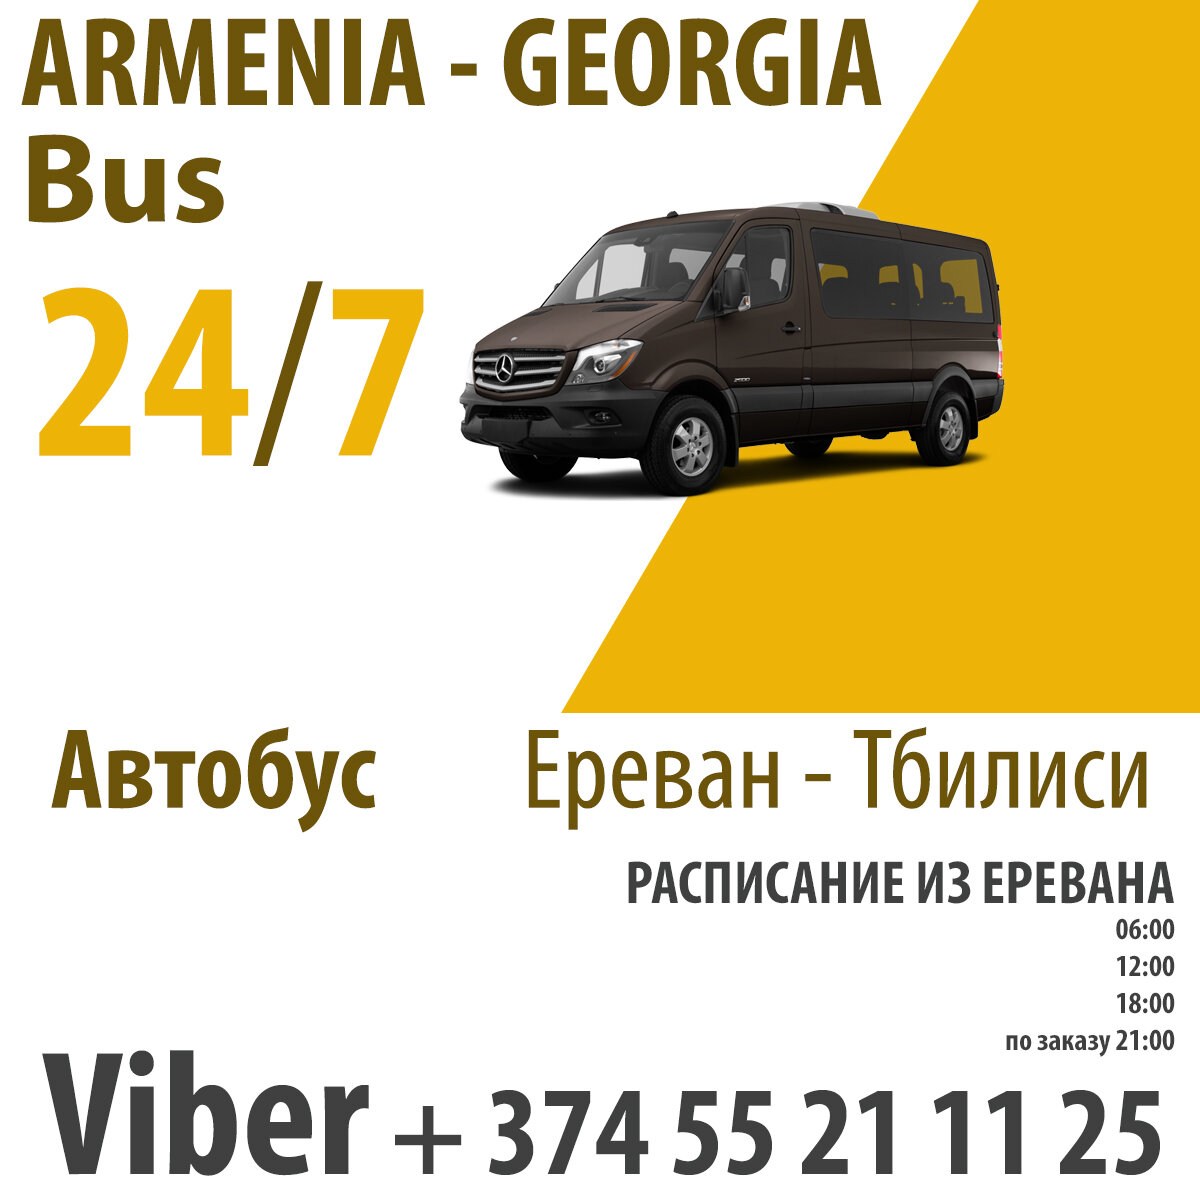 Ереван тбилиси купить. Ереван Тбилиси автобус. Маршрутки в Тбилиси. Маршрутка из Еревана в Тбилиси. Маршрутки из Тбилиси до Еревана.